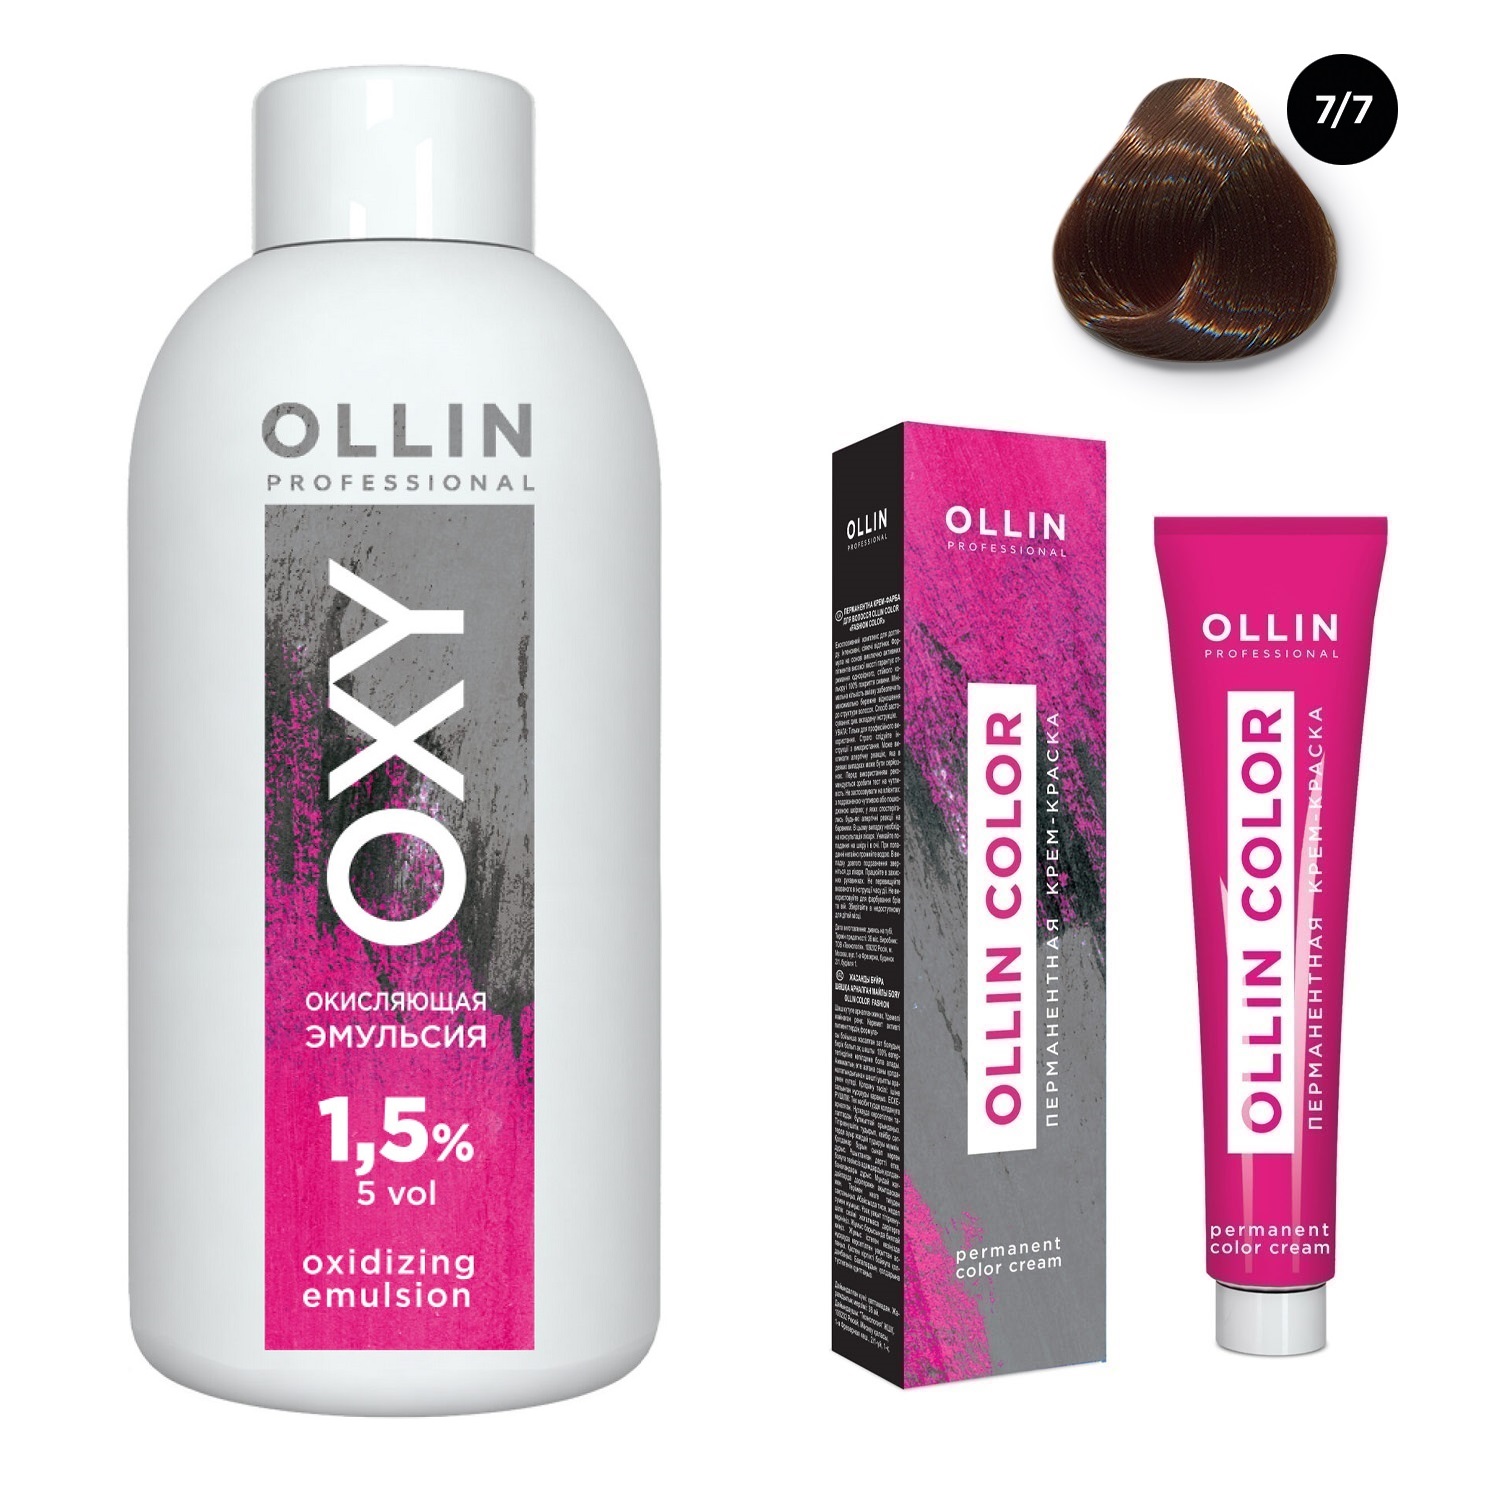 Ollin Professional Набор Перманентная крем-краска для волос Ollin Color оттенок 7/7 русый коричнево-махагоновый 100 мл + Окисляющая эмульсия Oxy 1,5% 150 мл (Ollin Professional, Ollin Color)